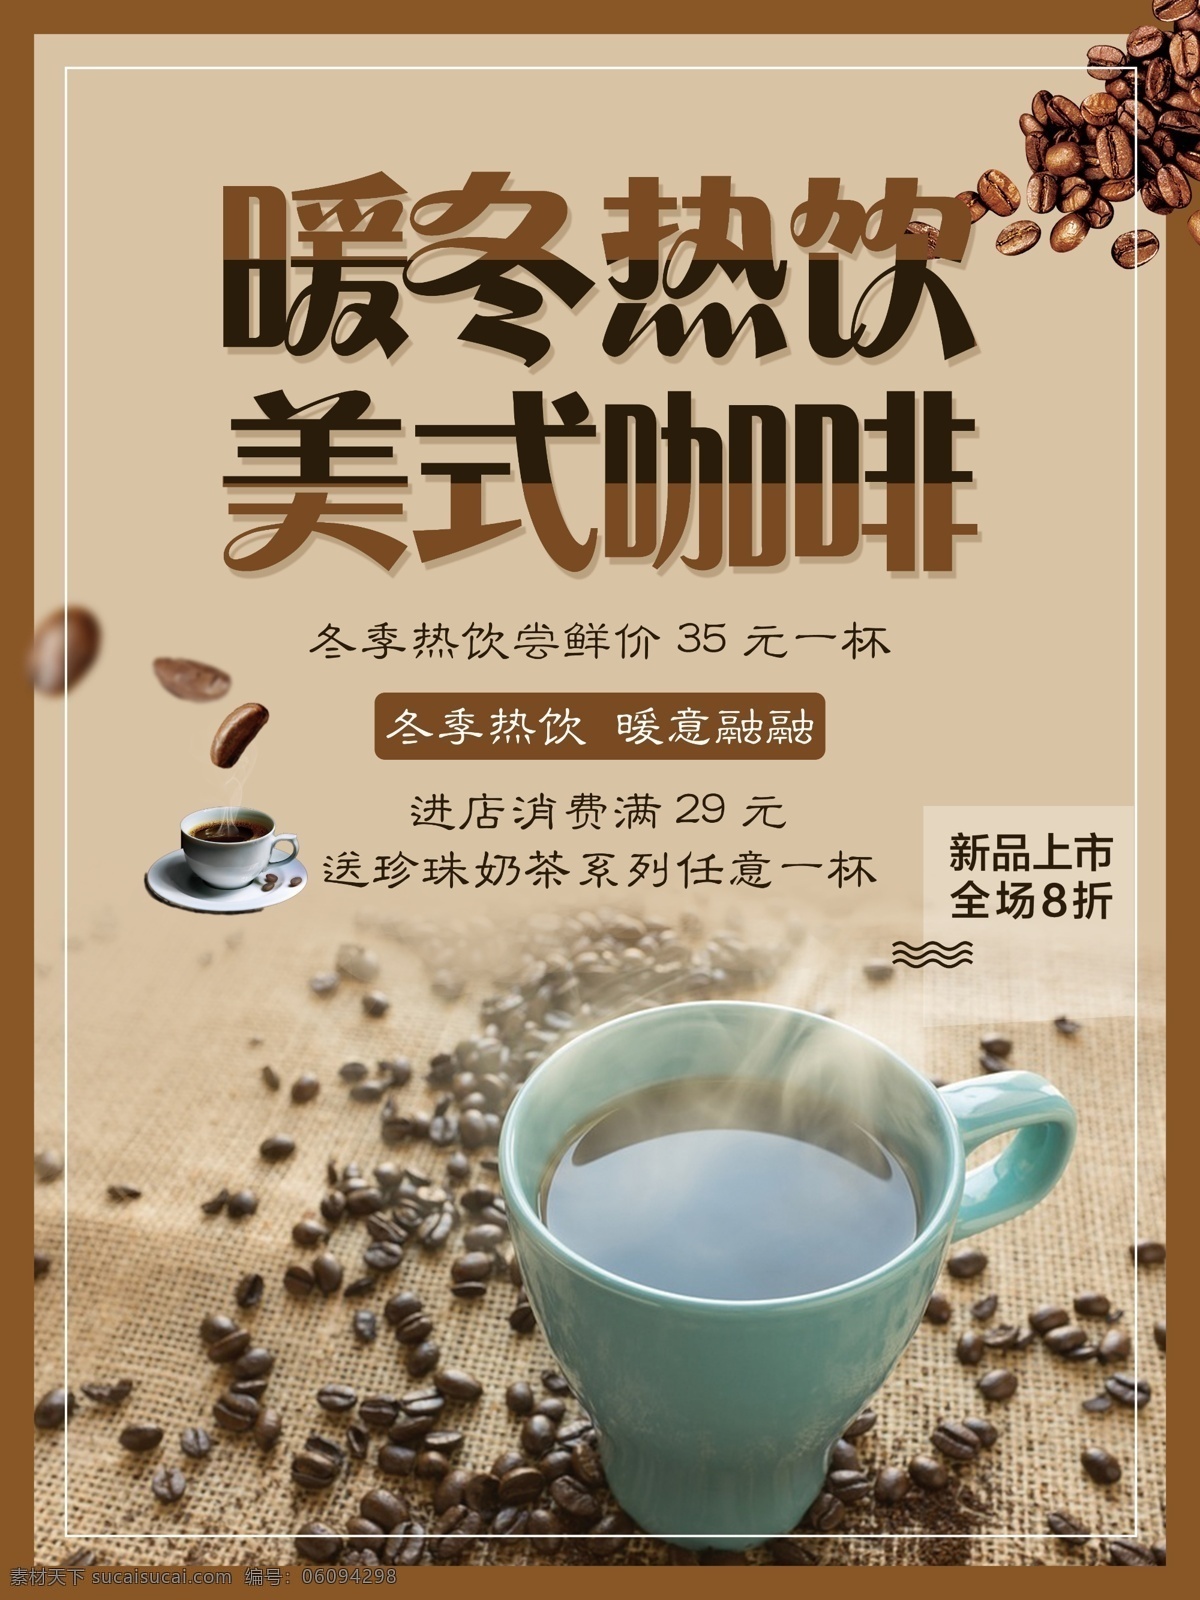 暖冬 热饮 美式 咖啡 促销 海报 暖冬热饮 美式咖啡 满减活动 咖啡豆 新品上市 促销咖啡海报